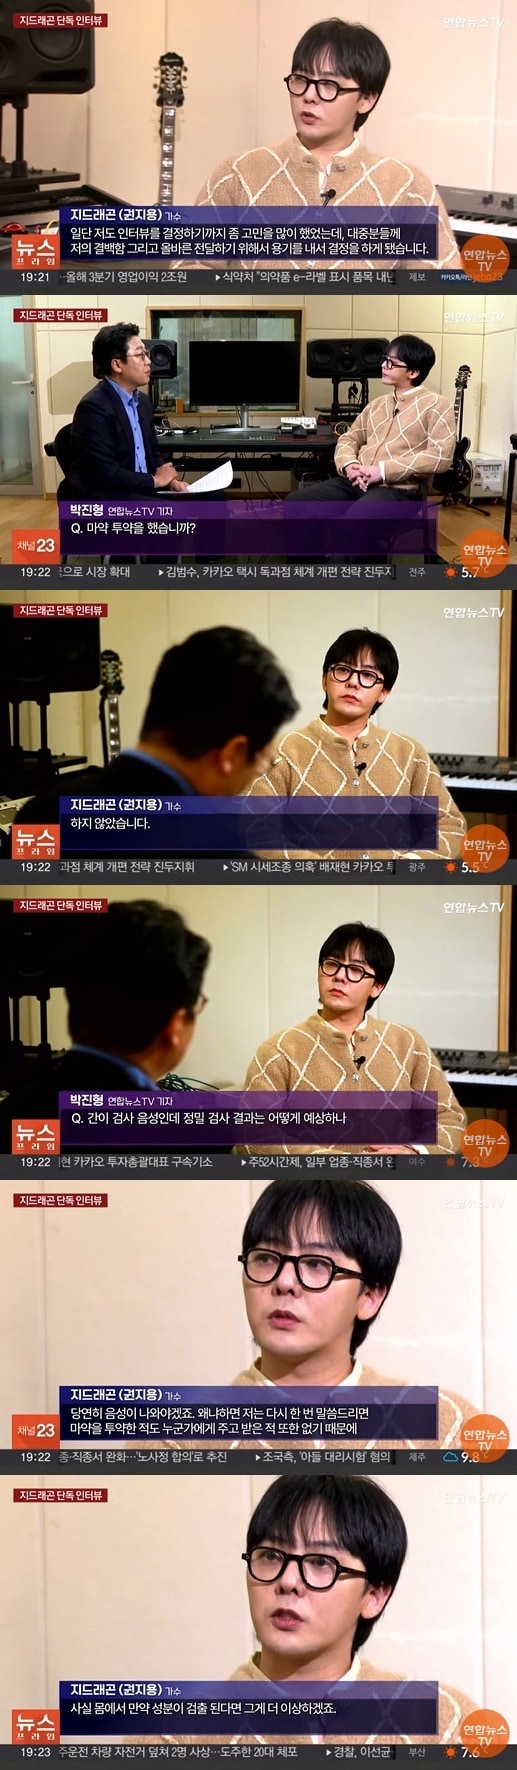 연합뉴스TV 방송 화면 캡처